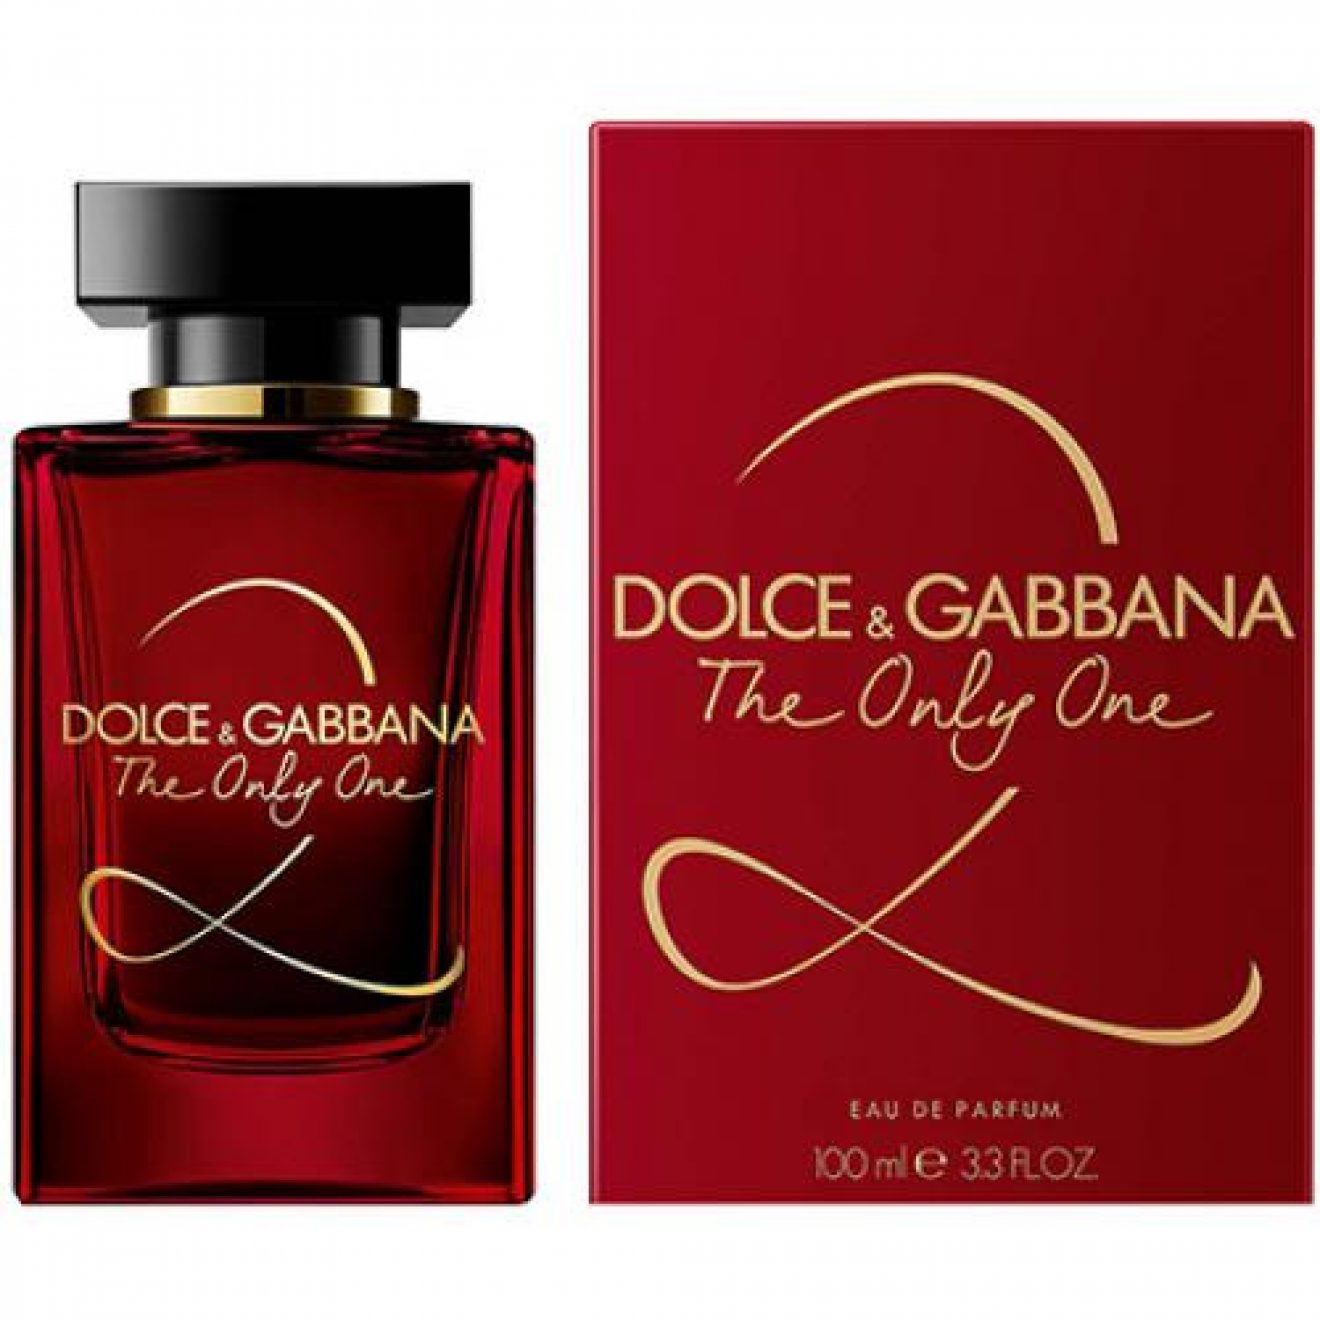 Парфюм дольче габбана в летуаль. Dolce Gabbana the only one 2 100 мл. Dolce & Gabbana the only one, EDP., 100 ml. Аромат Dolce Gabbana the only one 2 красный. Dolce& Gabbana the only one 2 EDP, 100 ml.